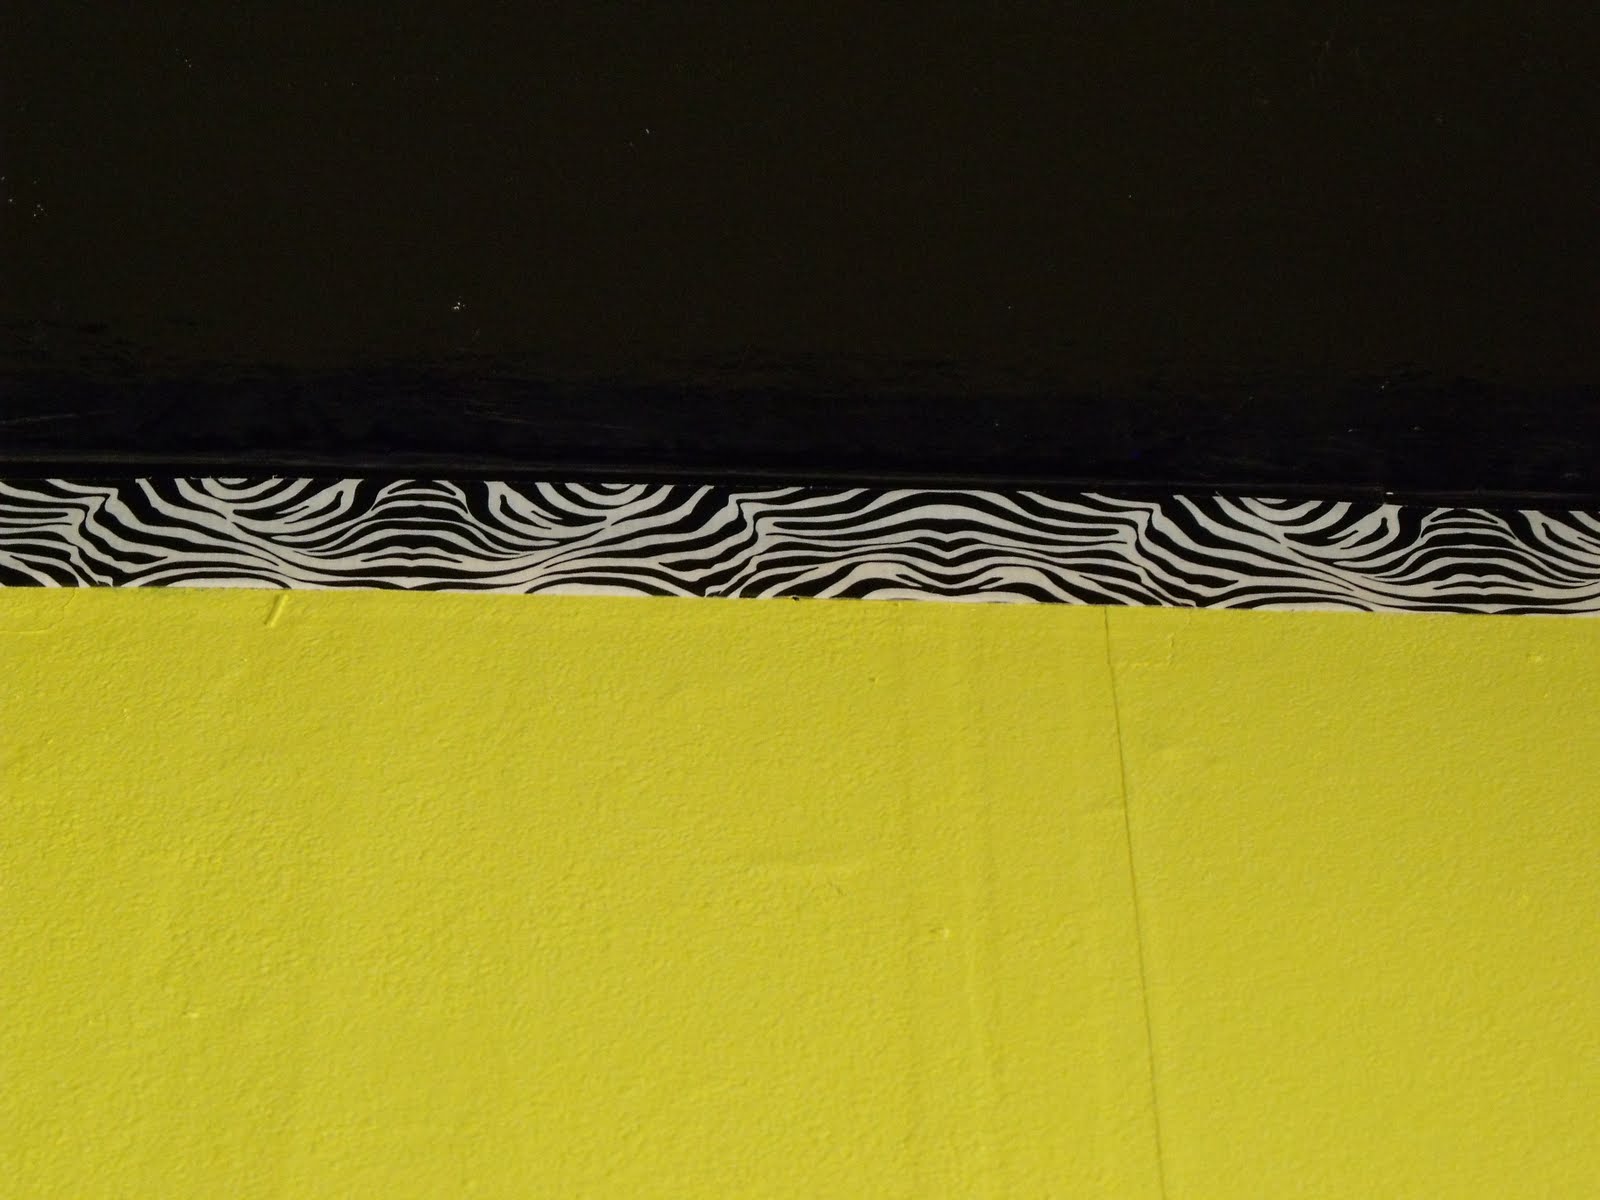 To finish it off, a zebra print border...err....zebra print GRAY TAPE ...